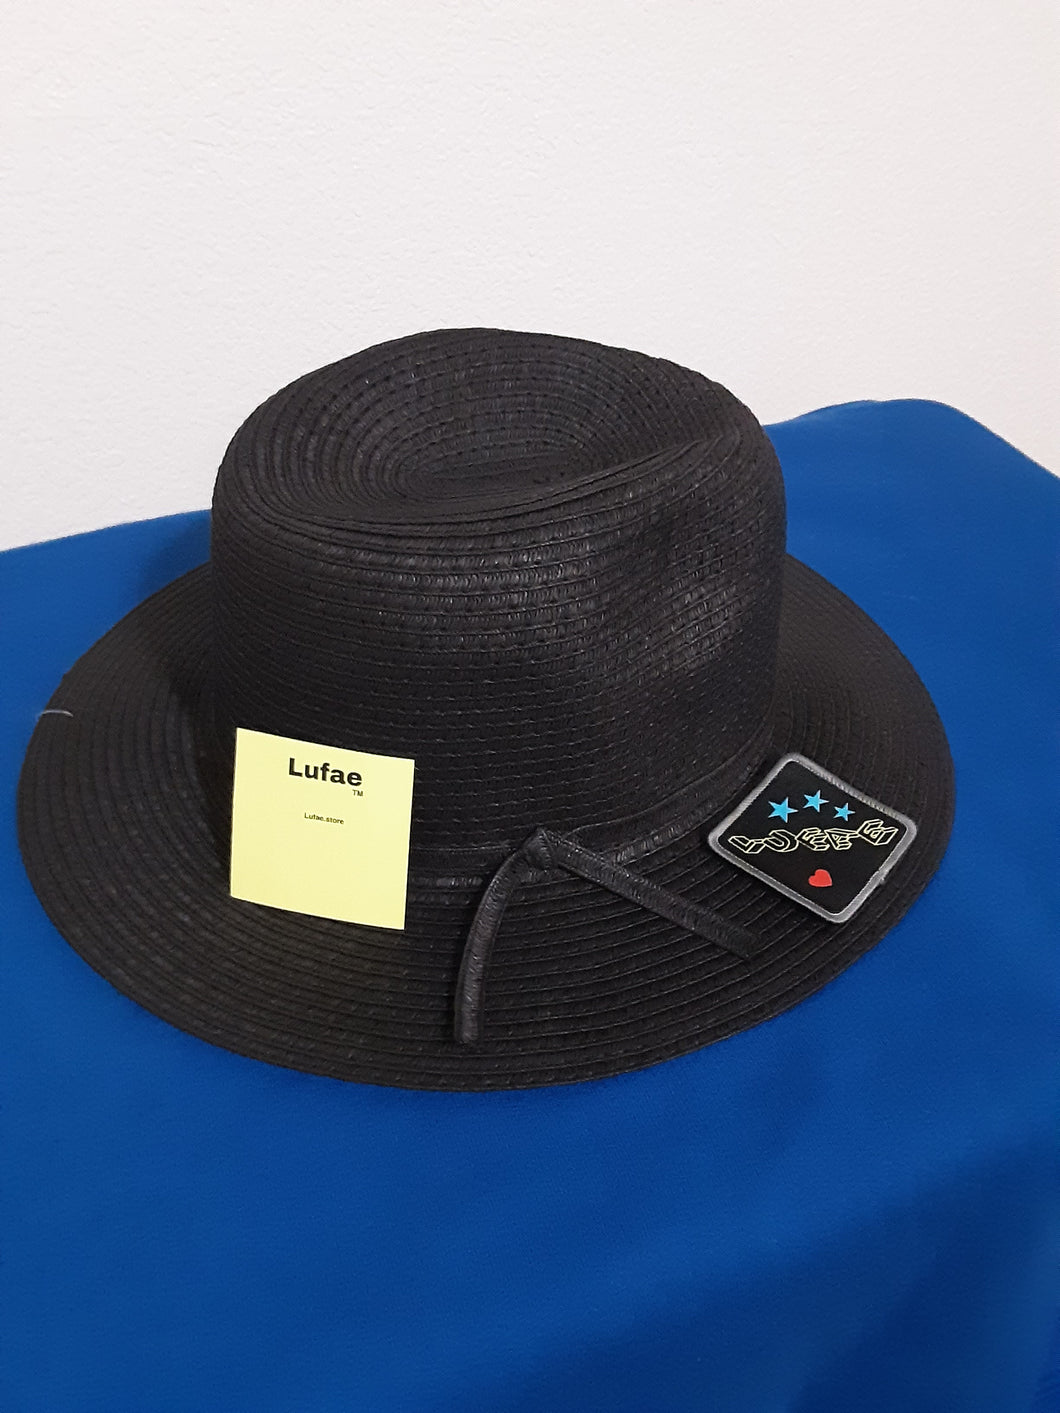 Fedora hat w/ lufae patch